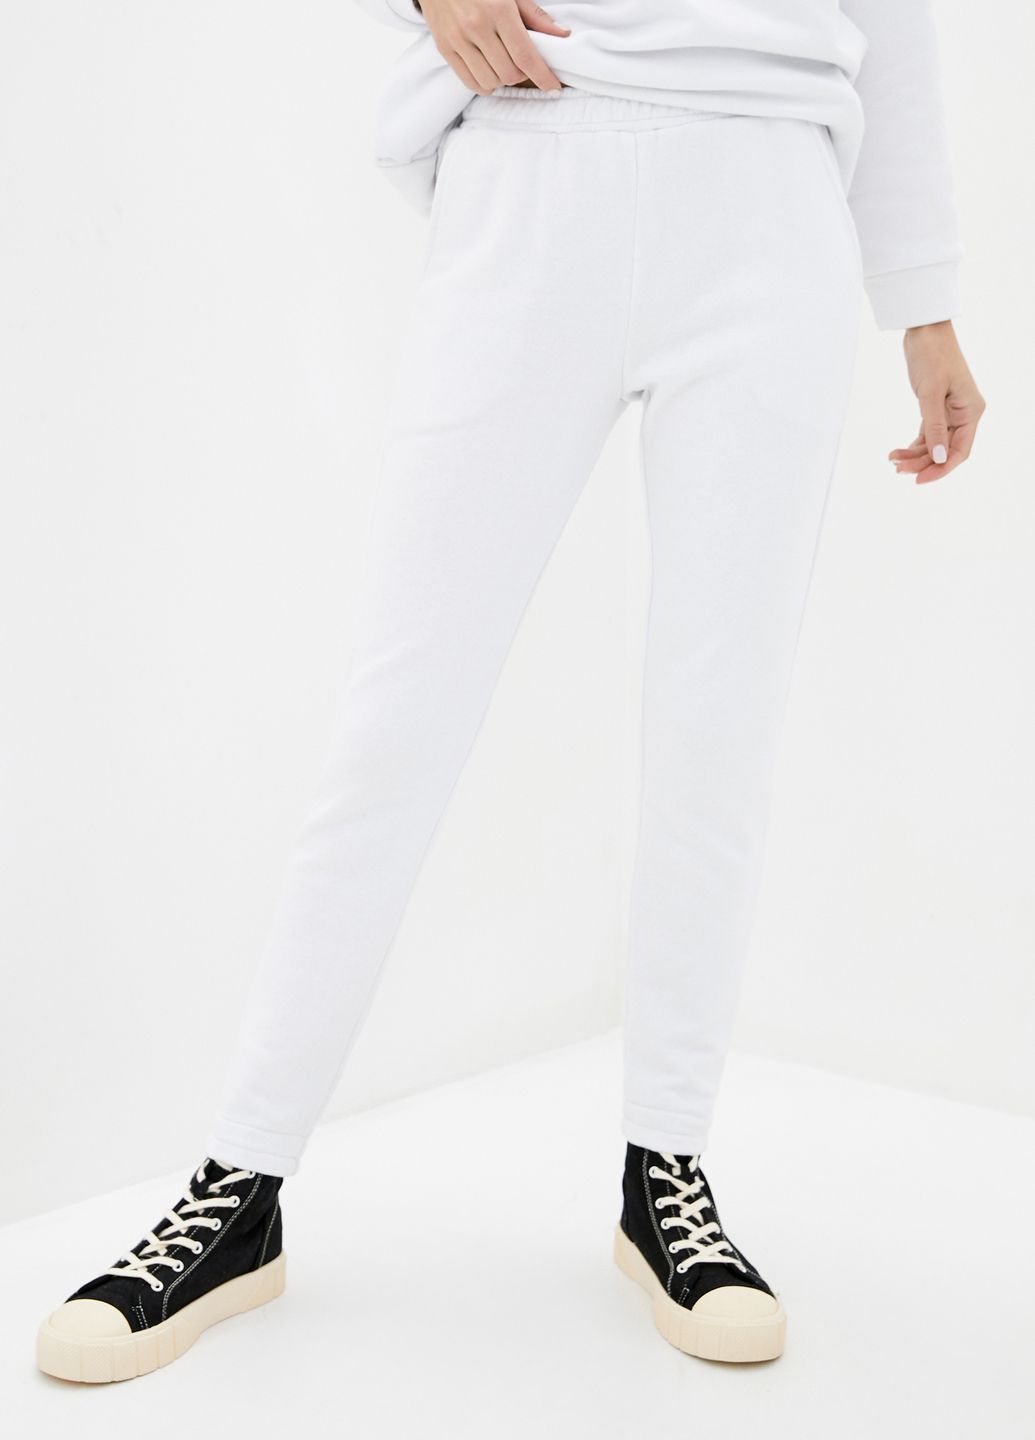 Купить Спортивные штаны женские Merlini Мадрид 600000047 - Белый, 42-44 в интернет-магазине